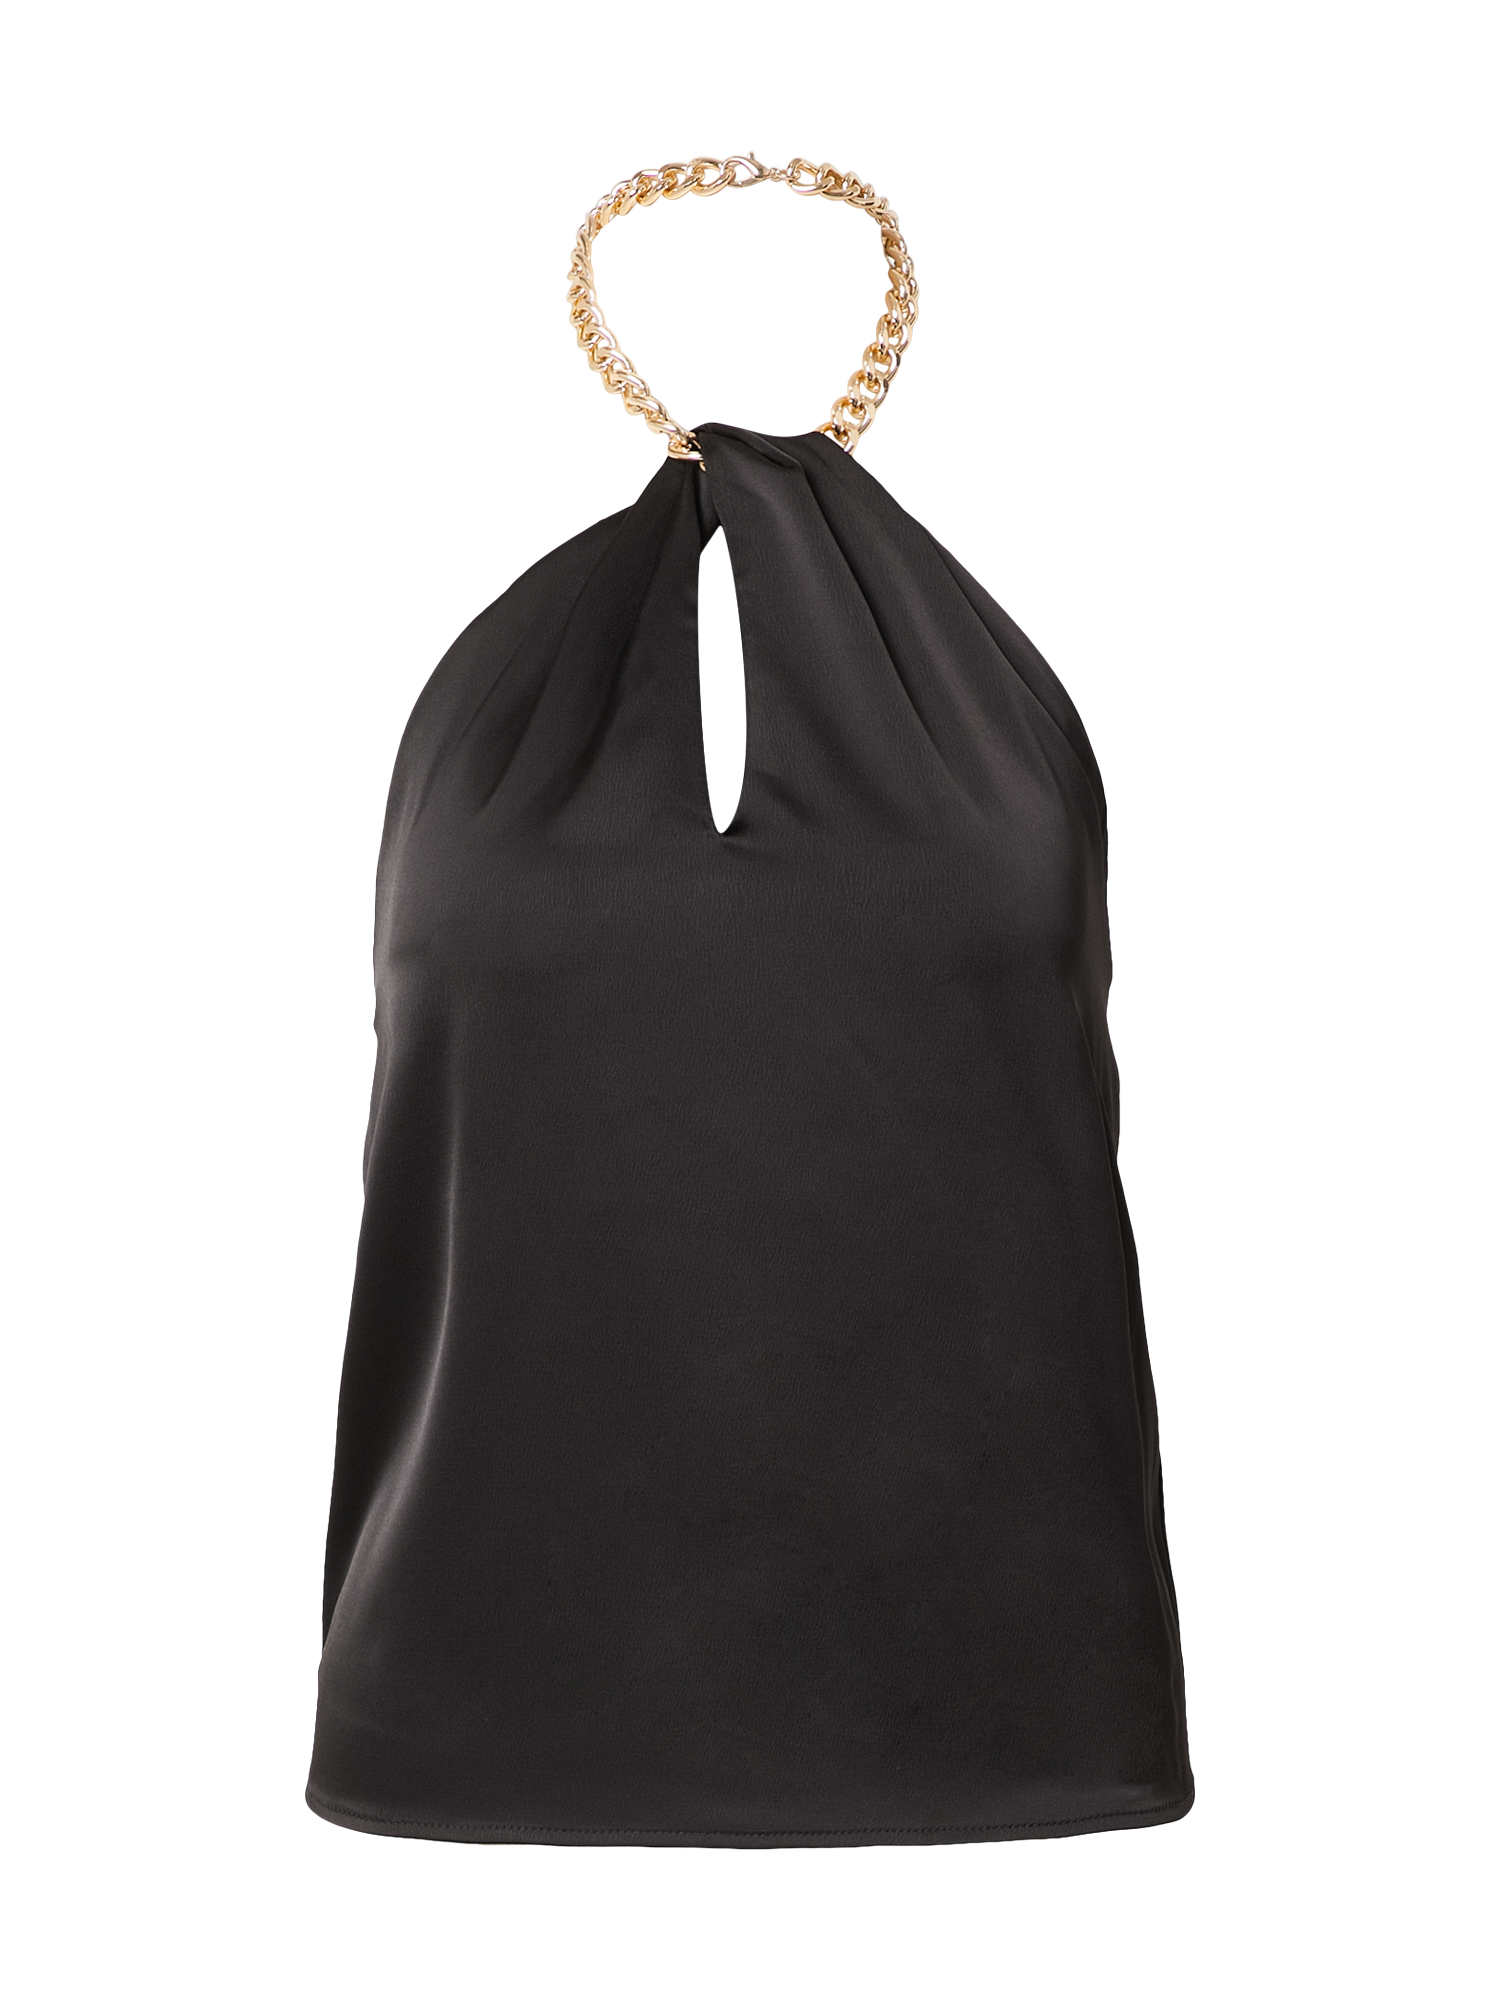 Odzież Koszulki & topy Gina Tricot Bluzka Amber w kolorze Czarnym 